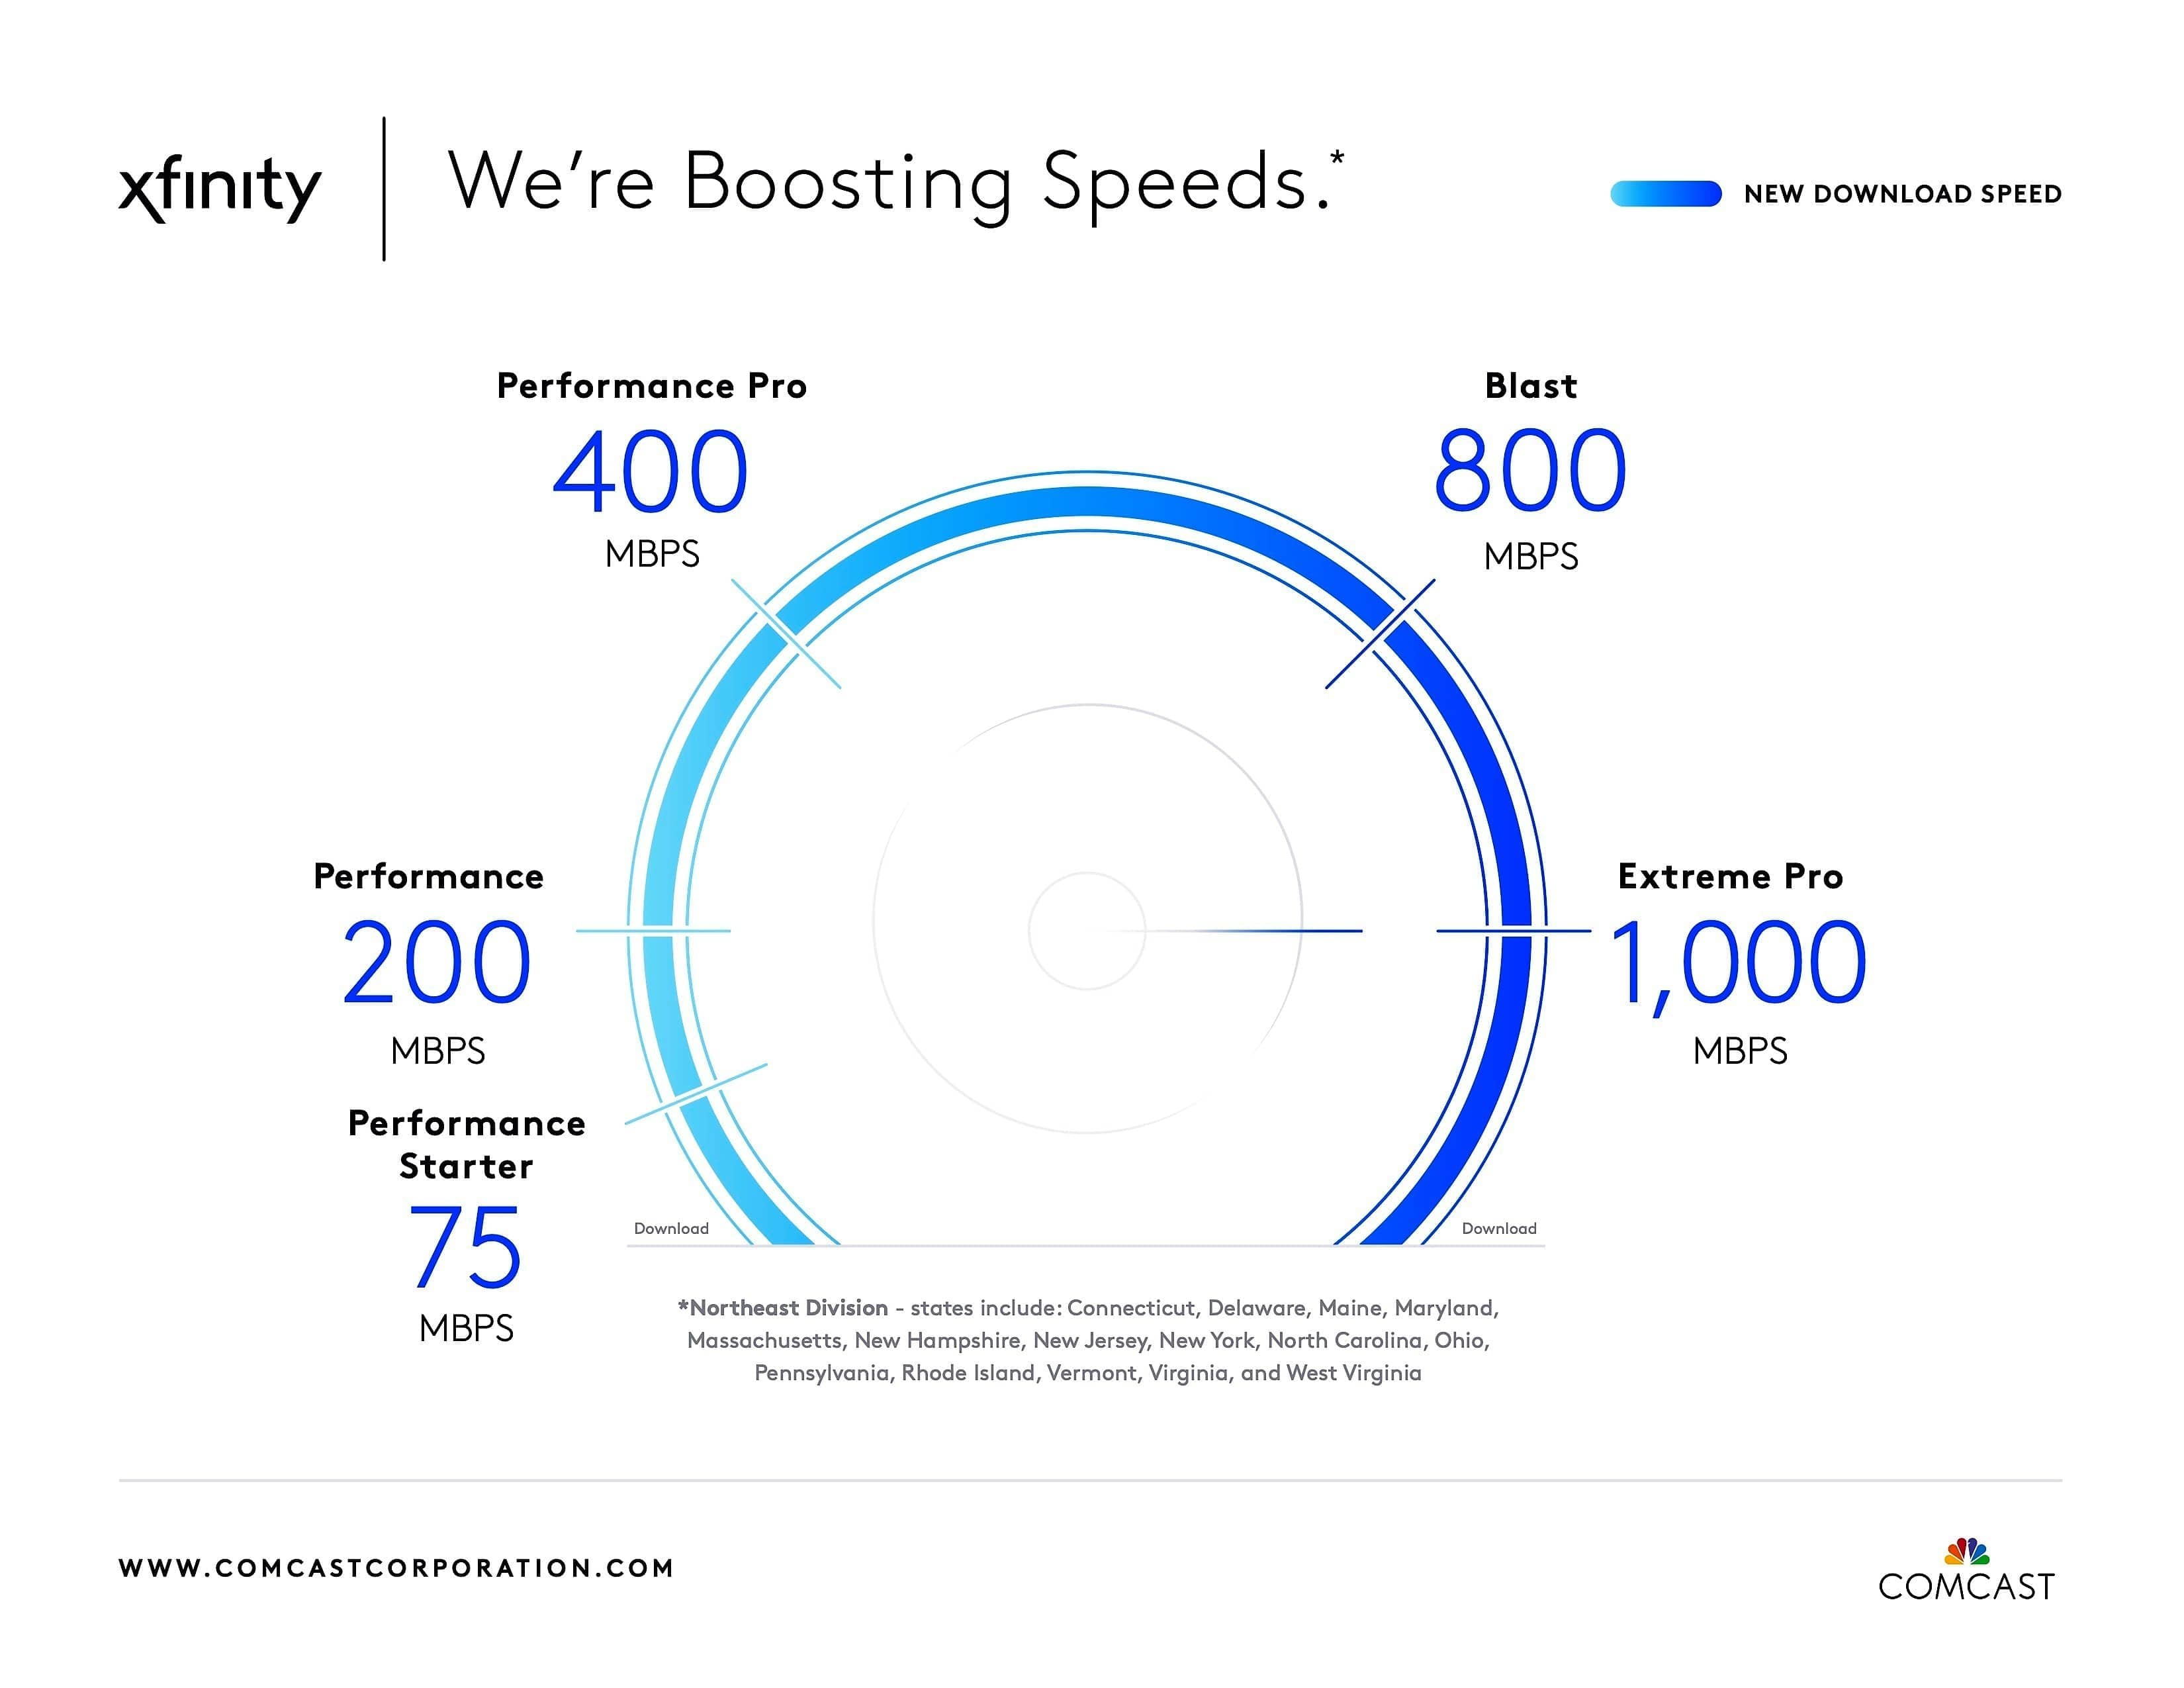 Comcast boosts Xfinity speeds in SWMI News/Talk/Sports 94.9 WSJM